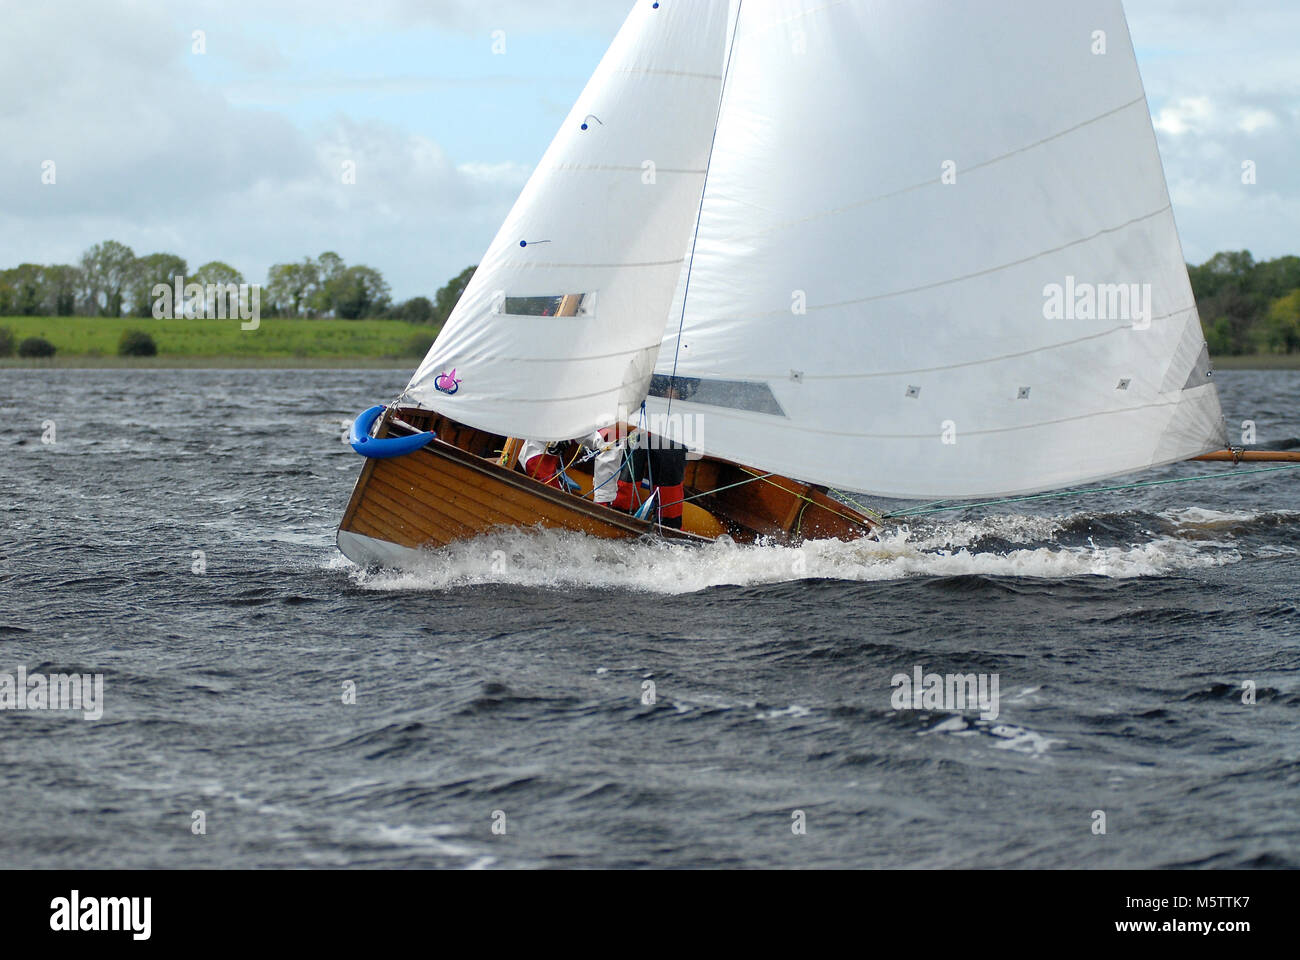 Un acqua Wag dinghy gare verso Roosky sul fiume Shannon in Irlanda. Swiss Olympic sailor Albert Schiess è al timone. Foto Stock